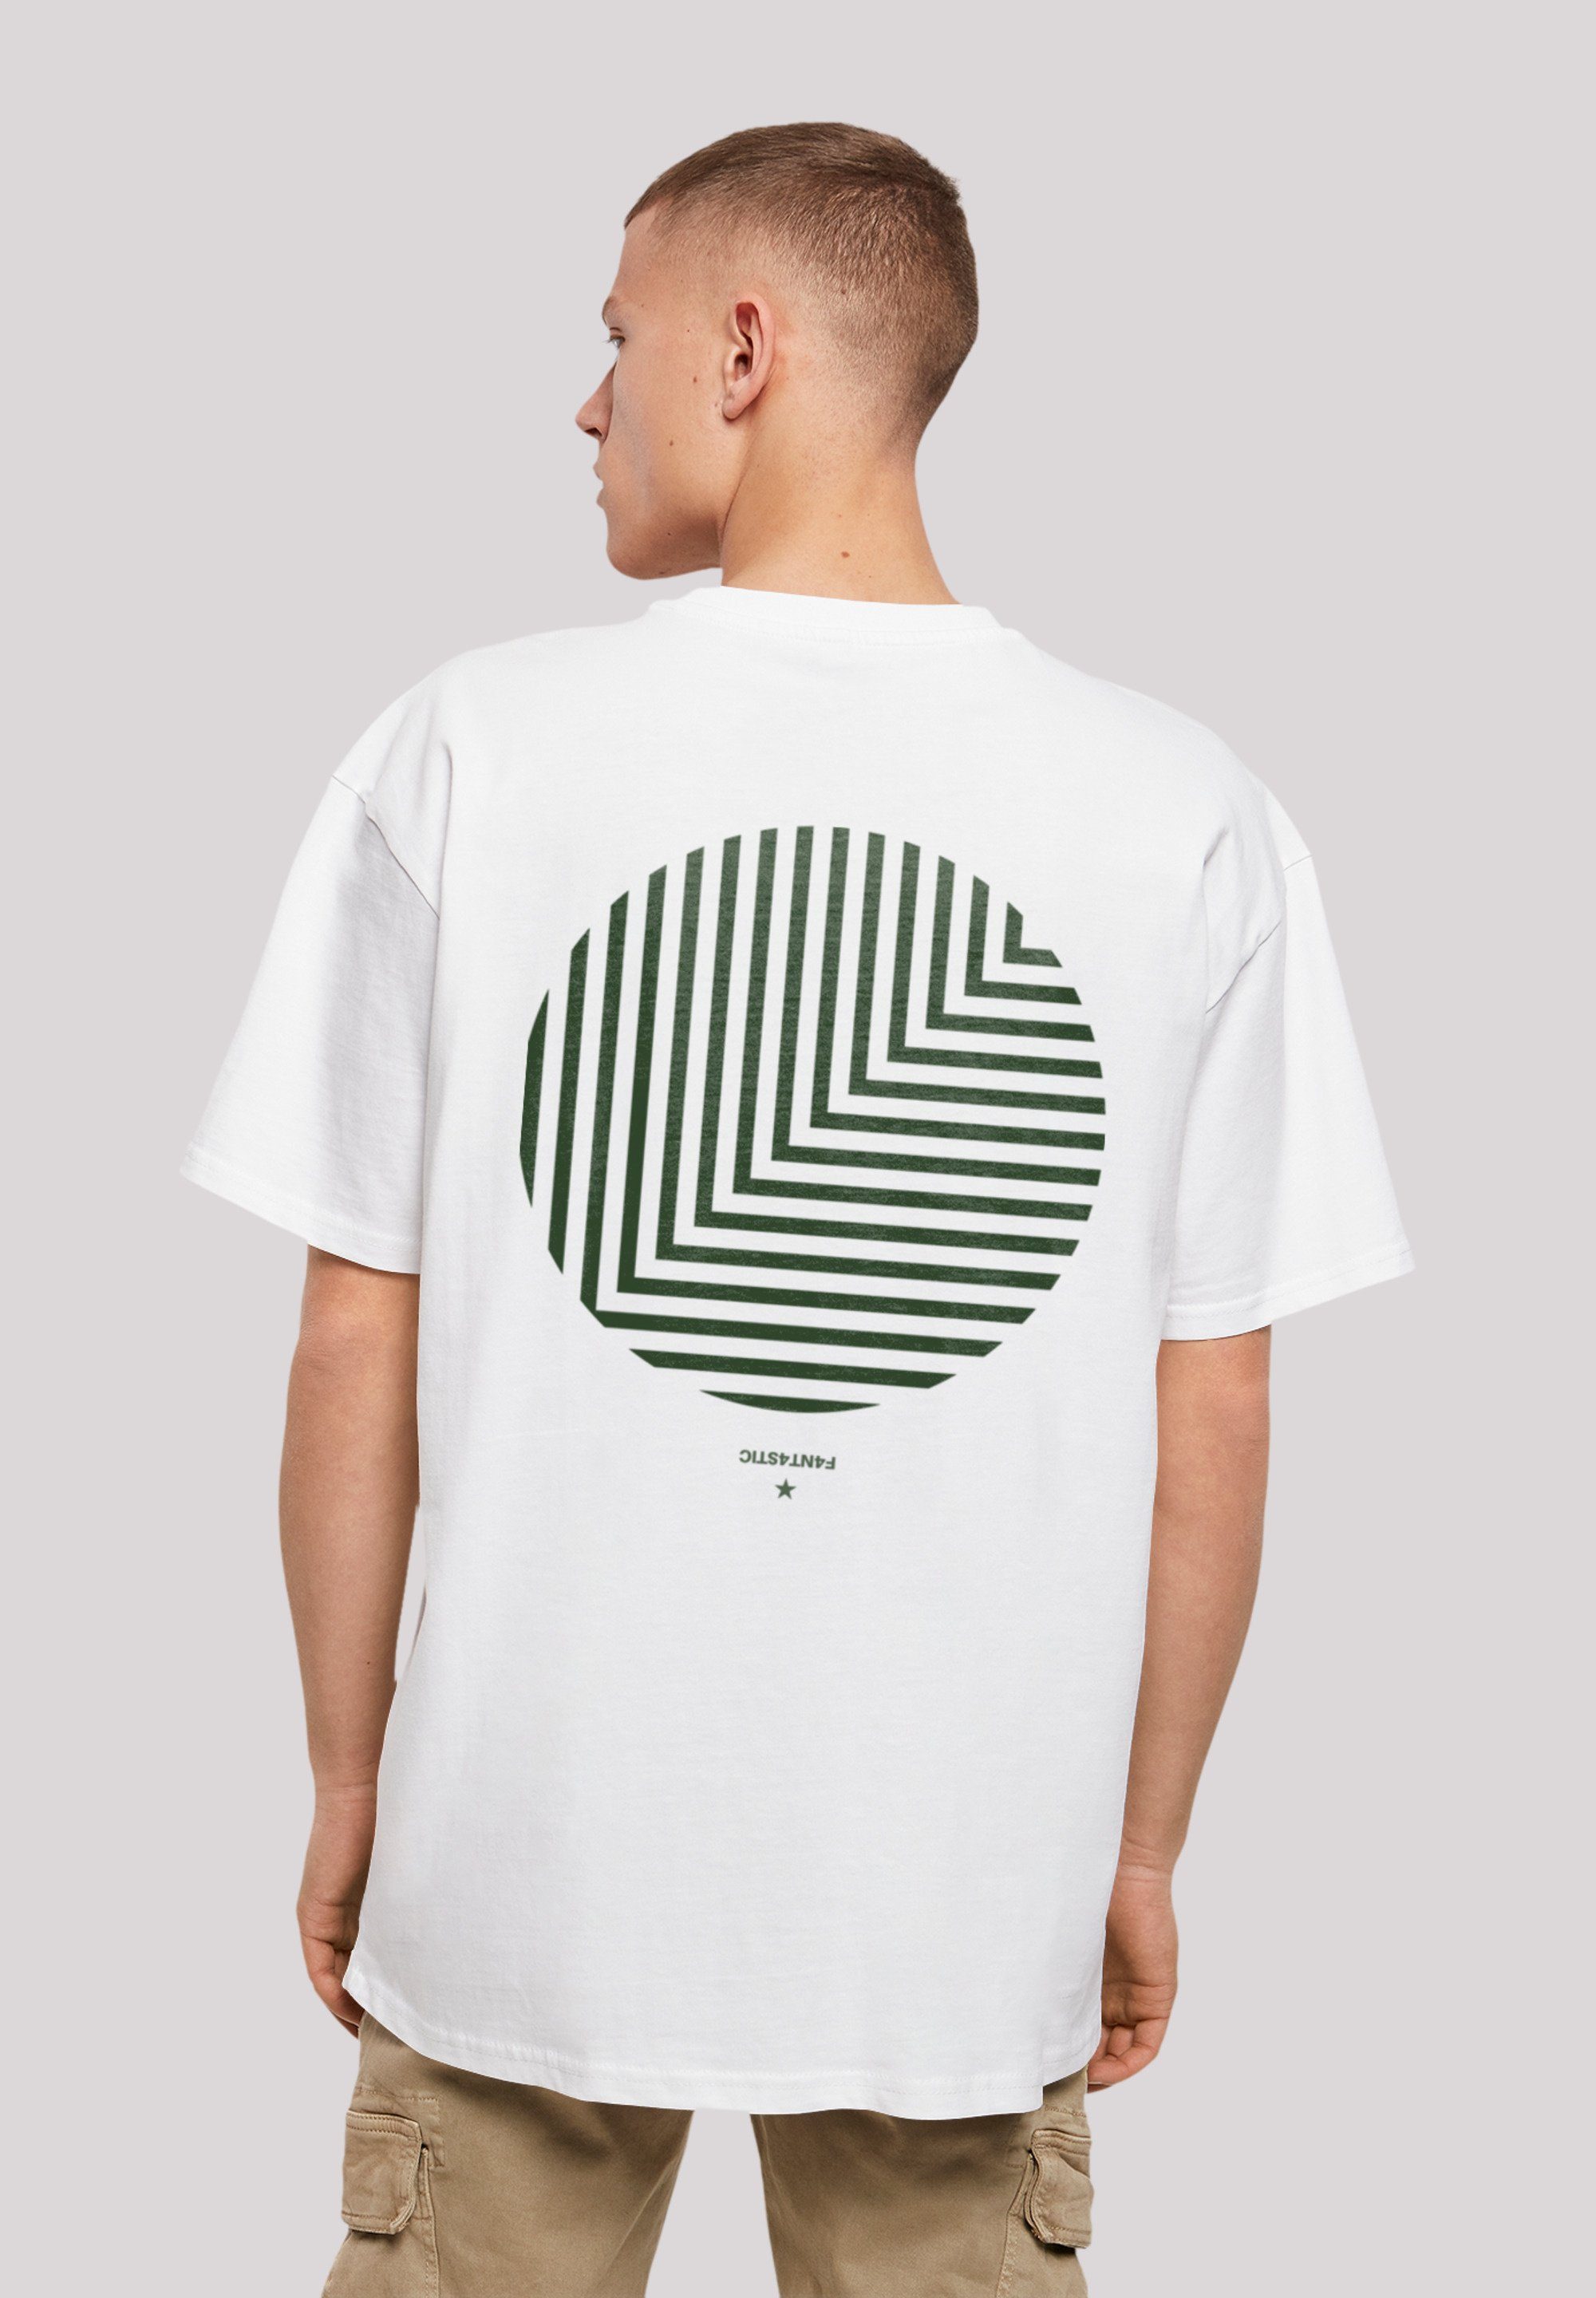 F4NT4STIC T-Shirt Geometrics Grau Print weiß